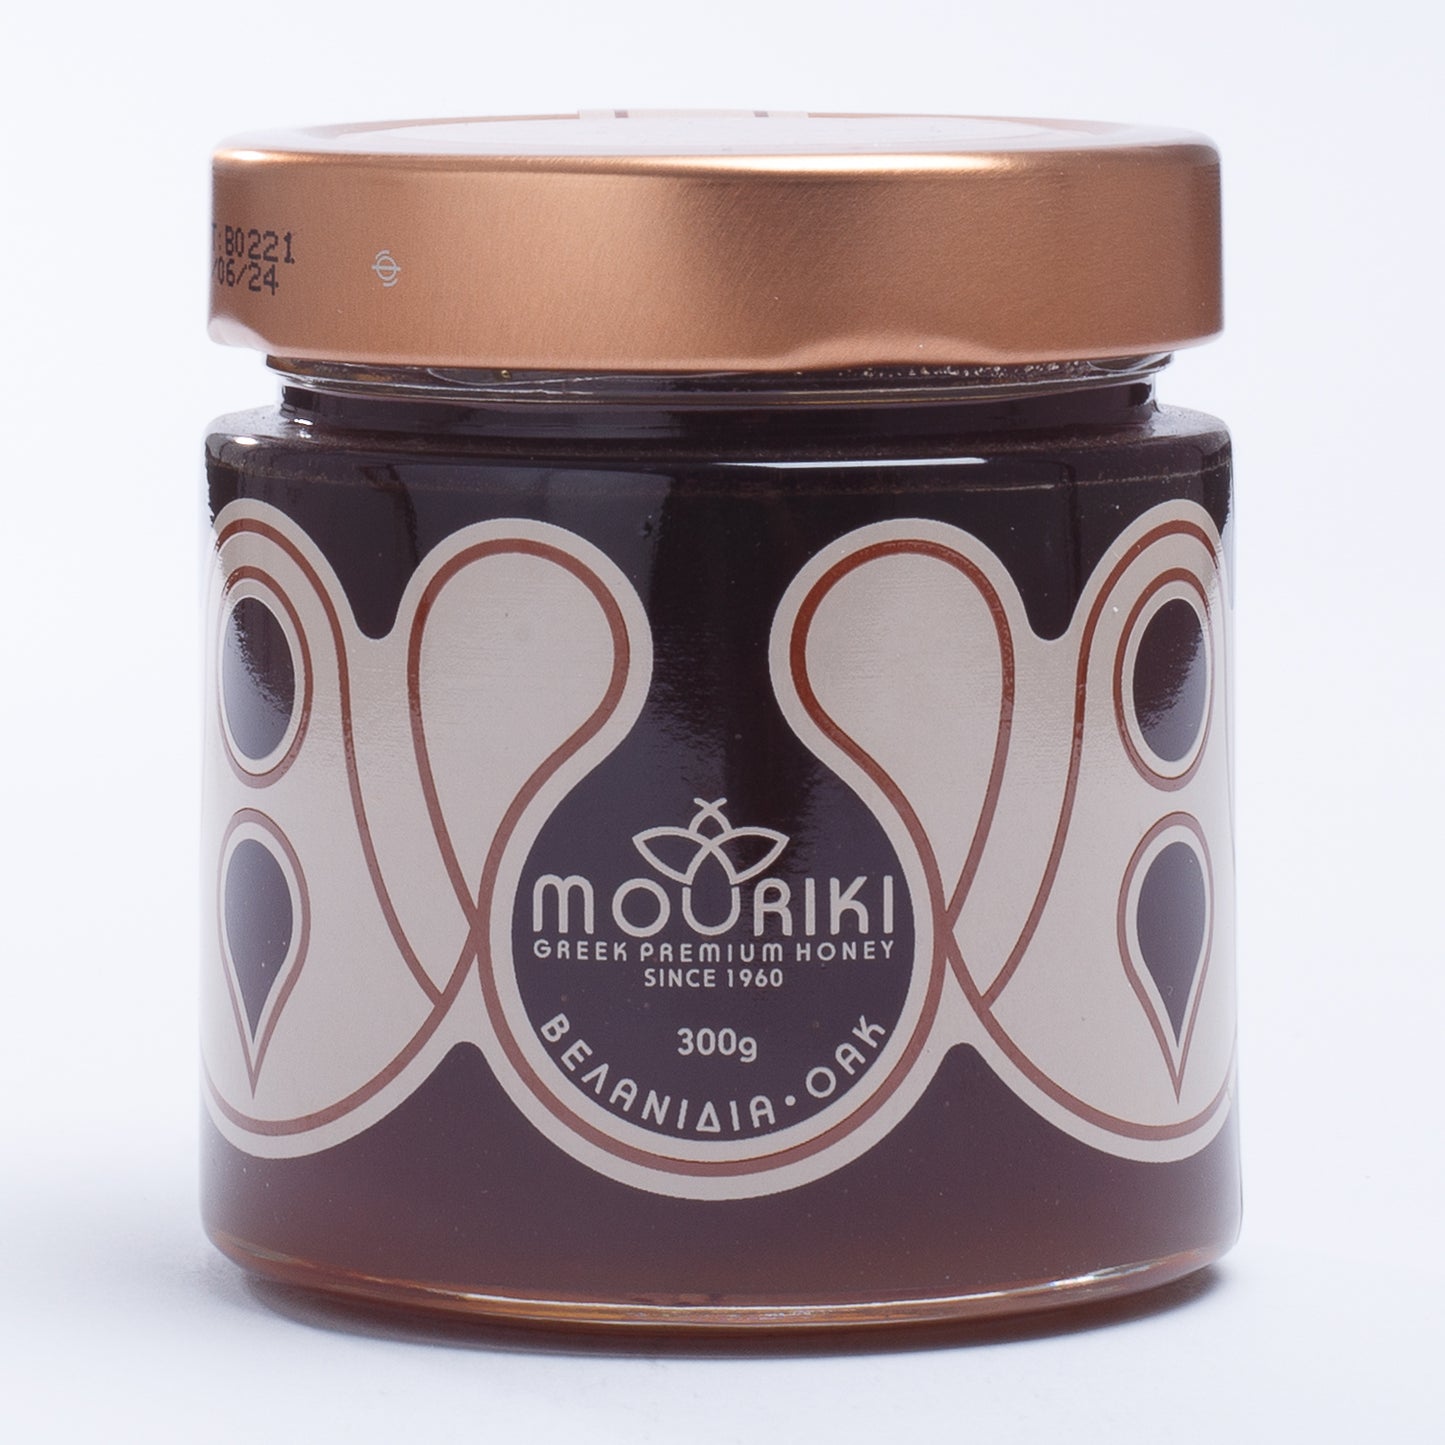 Mouriki Oak Honey Of Evritania 300gr